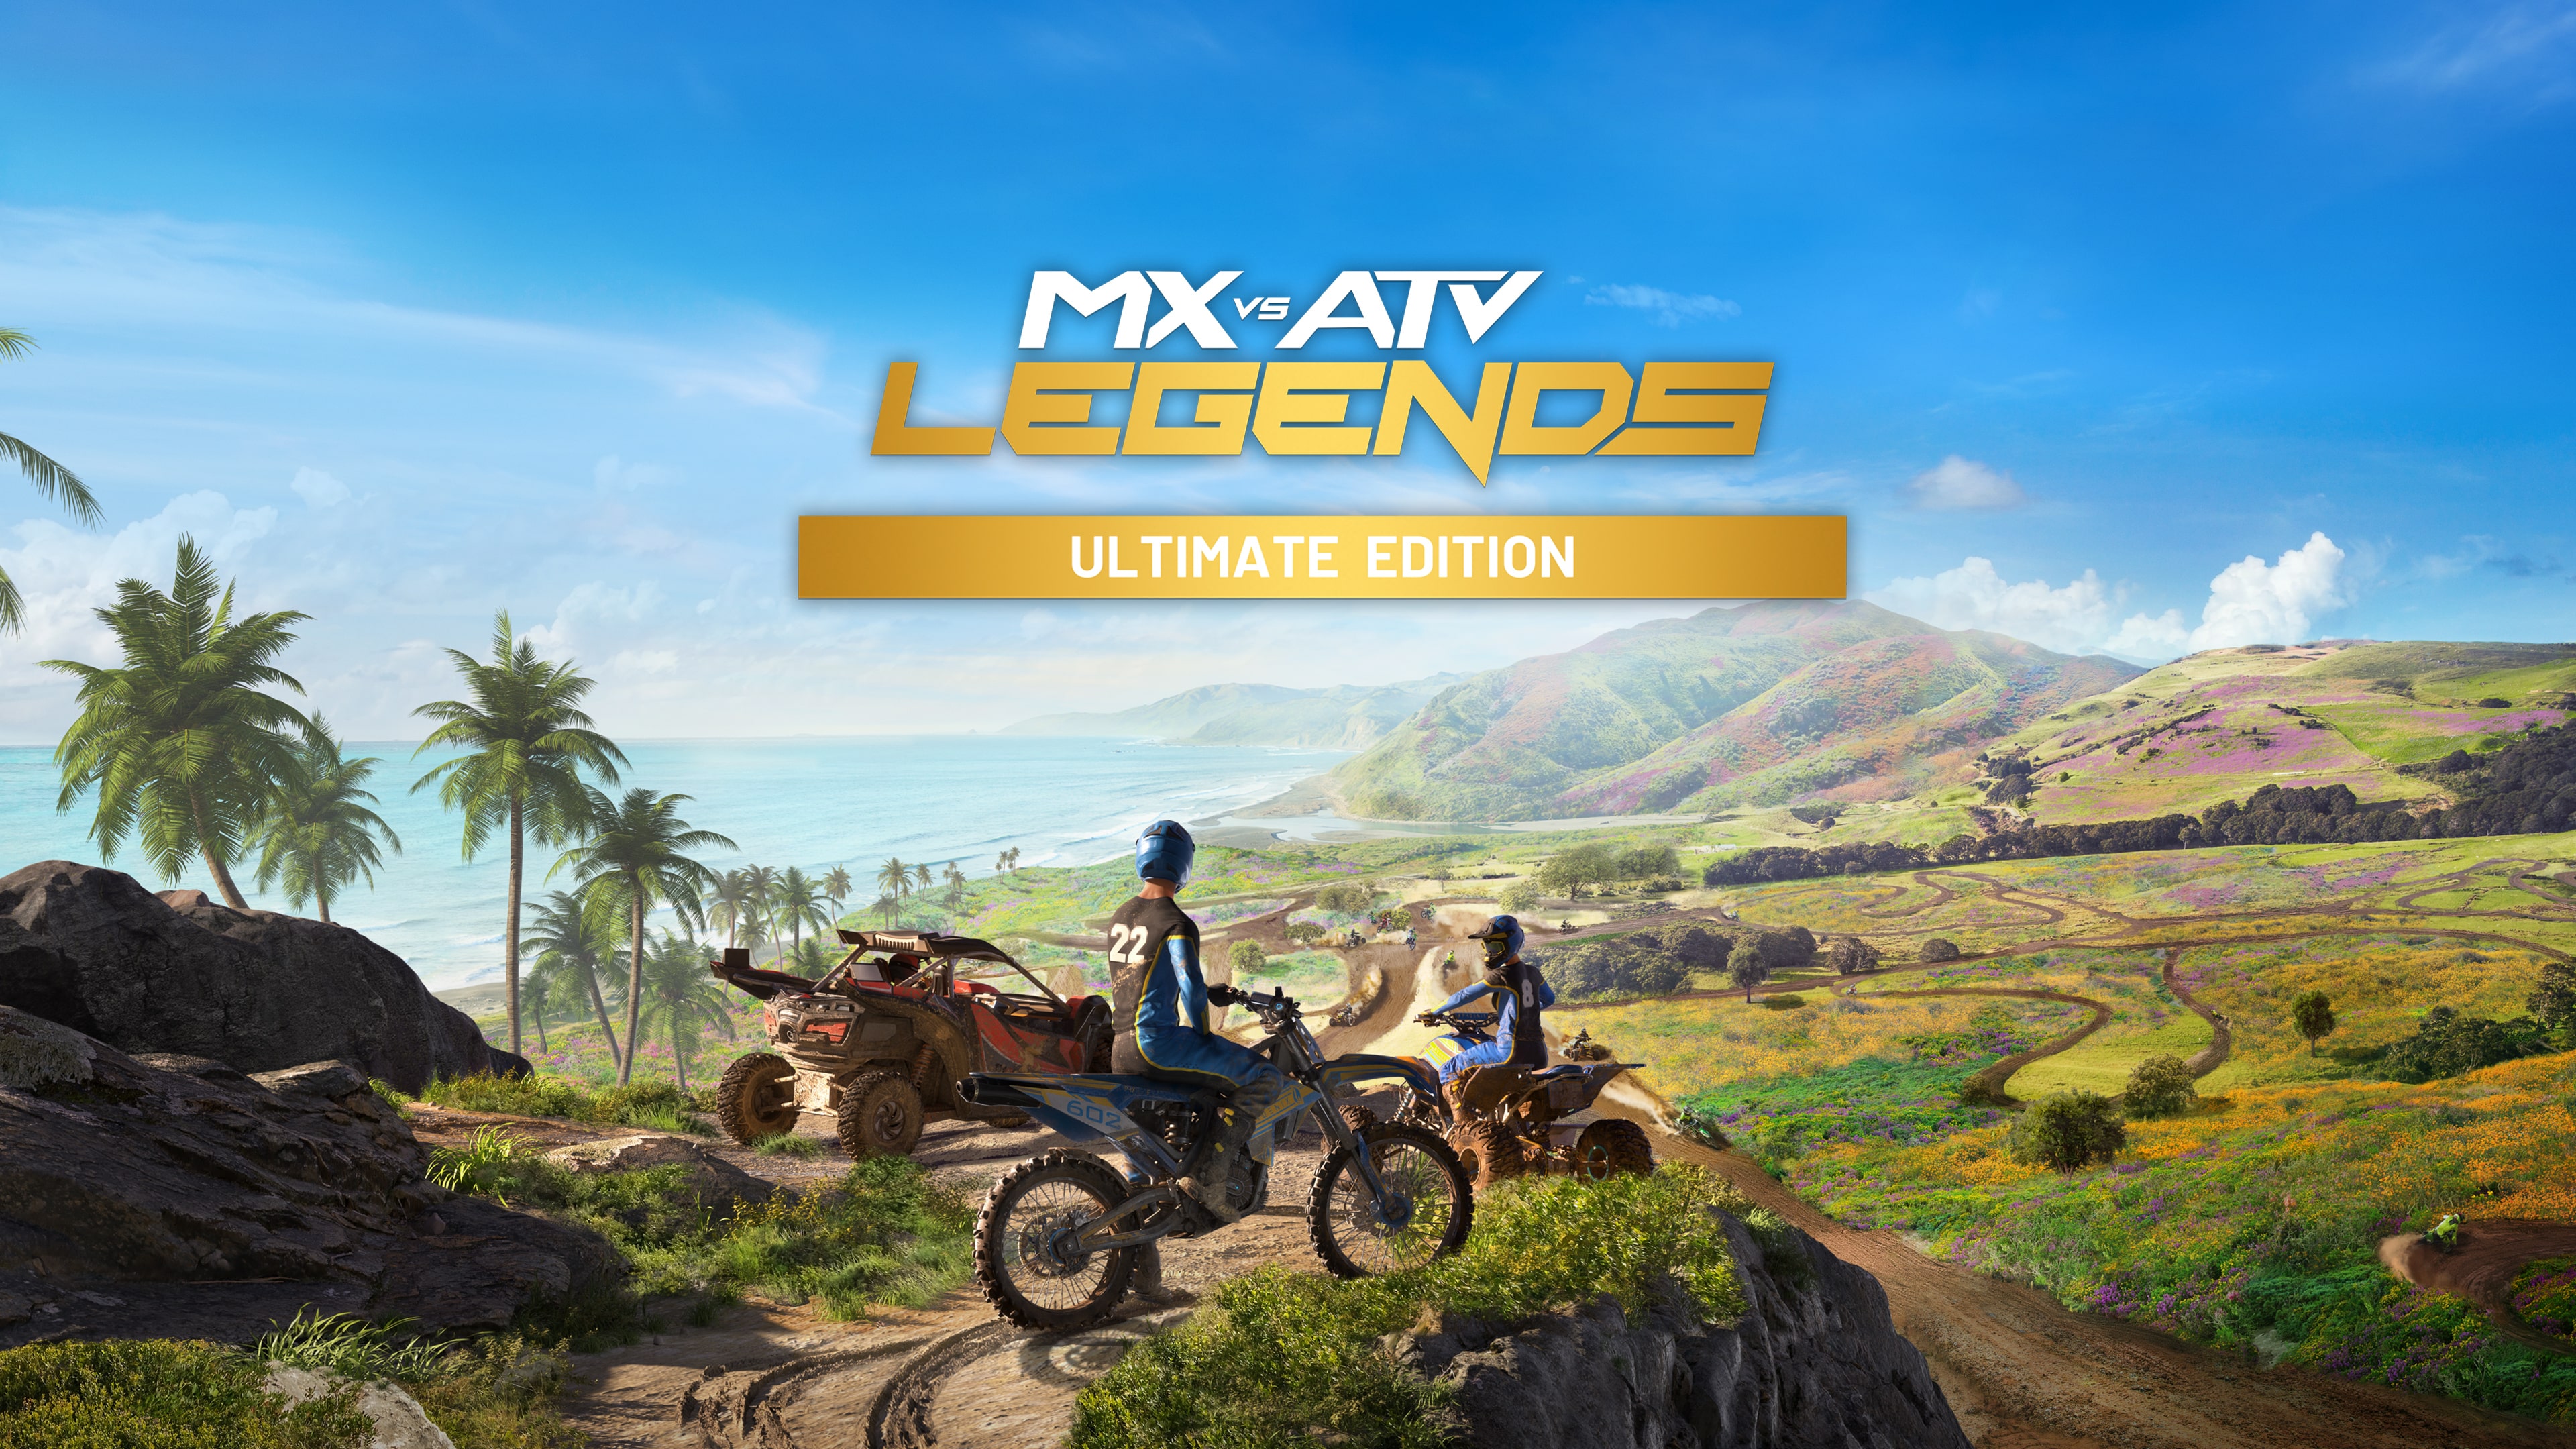 MX vs ATV Legends - Deluxe Edition